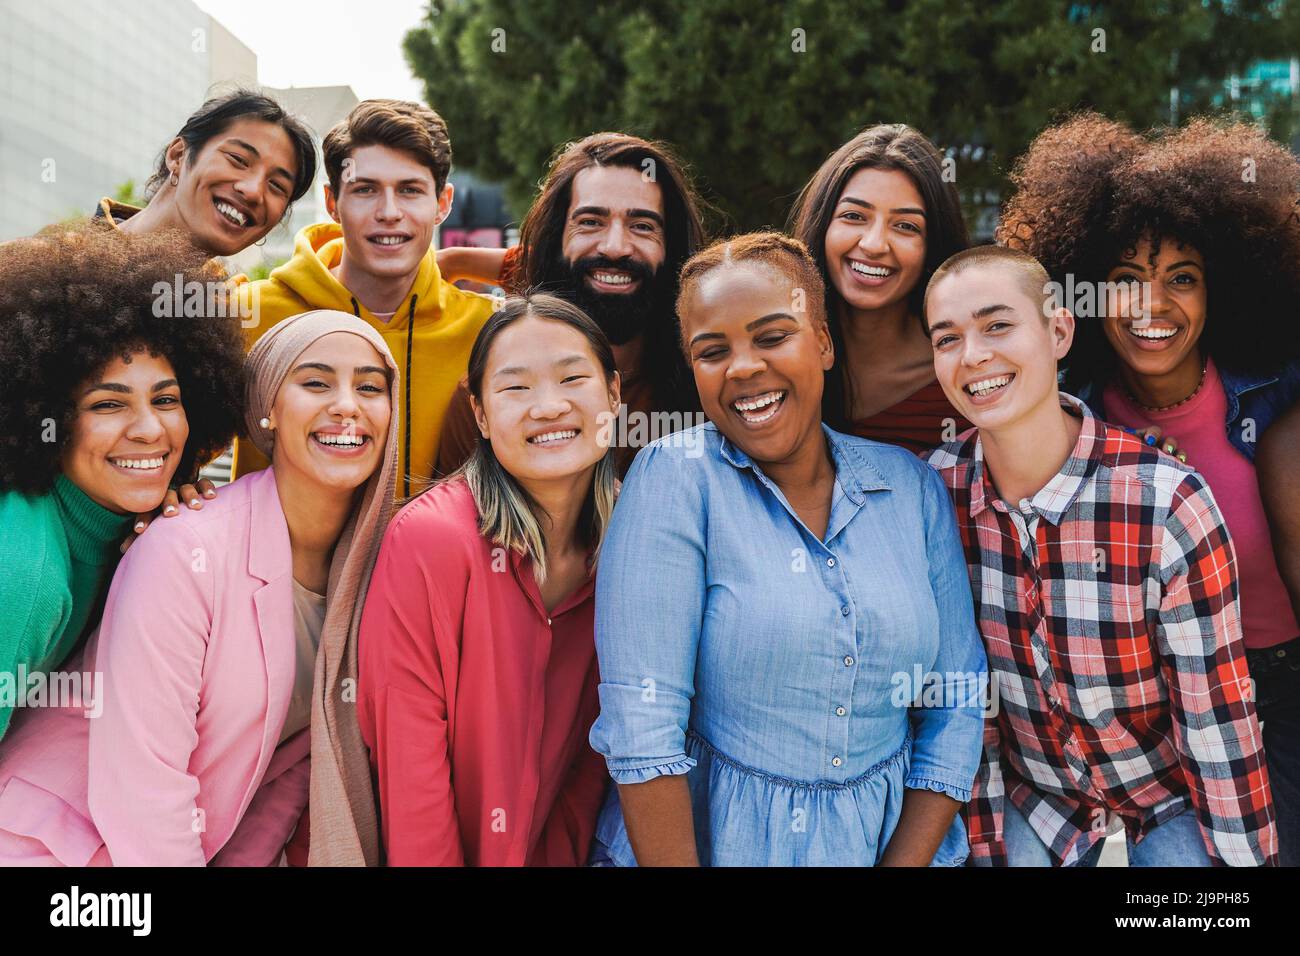 Multiethnische, vielfältige Gruppe von Menschen, die Spaß im Freien haben - Diversity Lifestyle Konzept Stockfoto